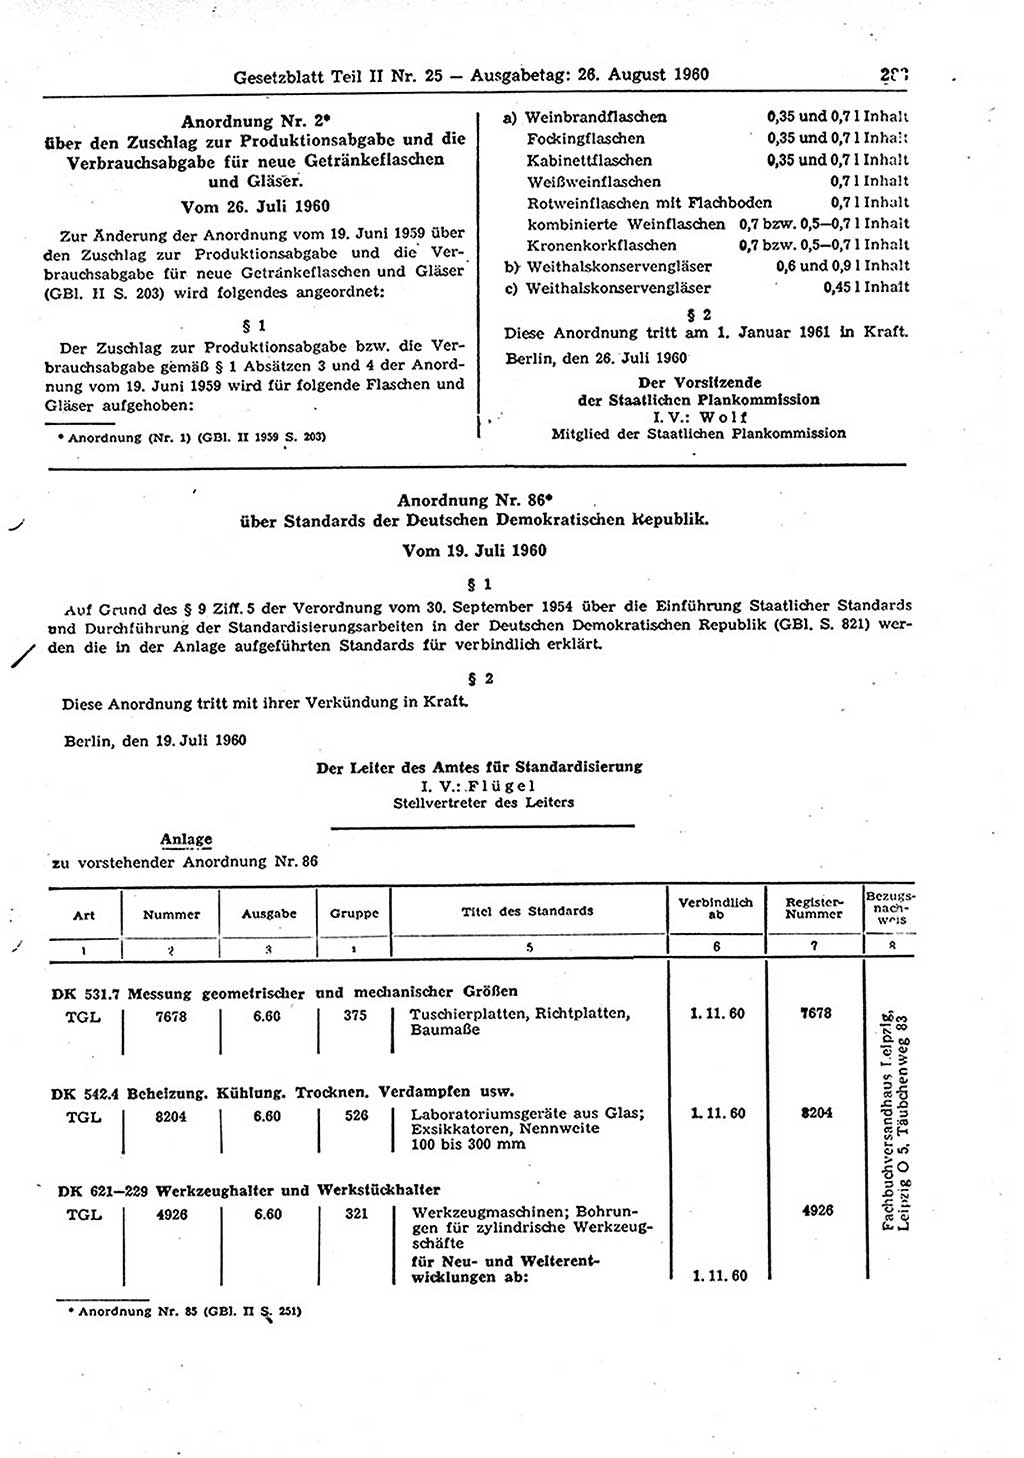 Gesetzblatt (GBl.) der Deutschen Demokratischen Republik (DDR) Teil ⅠⅠ 1960, Seite 283 (GBl. DDR ⅠⅠ 1960, S. 283)